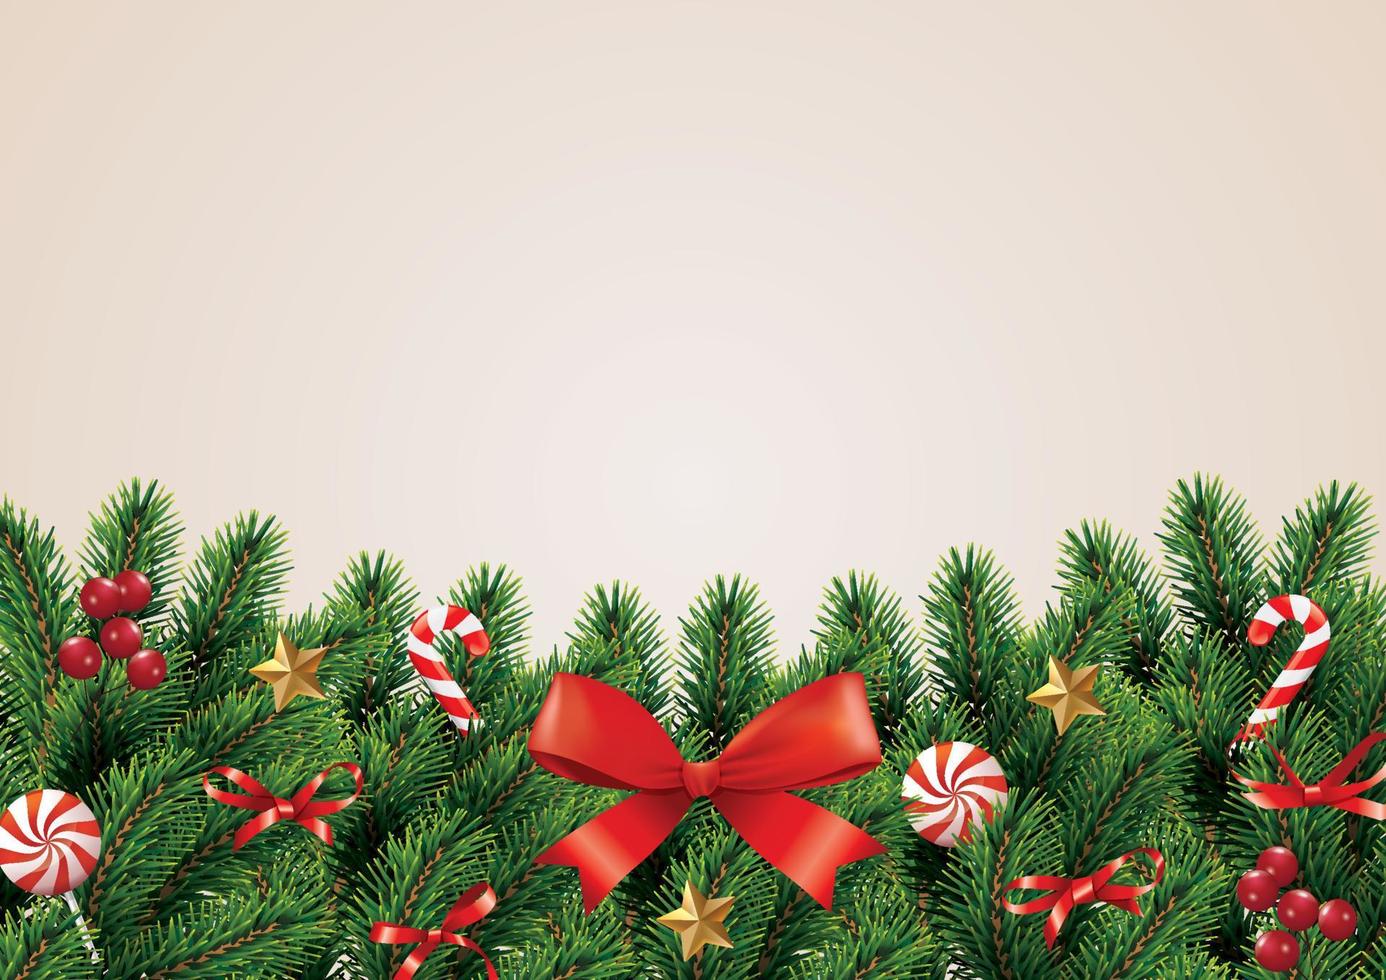 jul och krans och gränsen för realistiska röda band julgranar grenar dekorerade med bär, stjärnor och pärlor. vektor illustration.